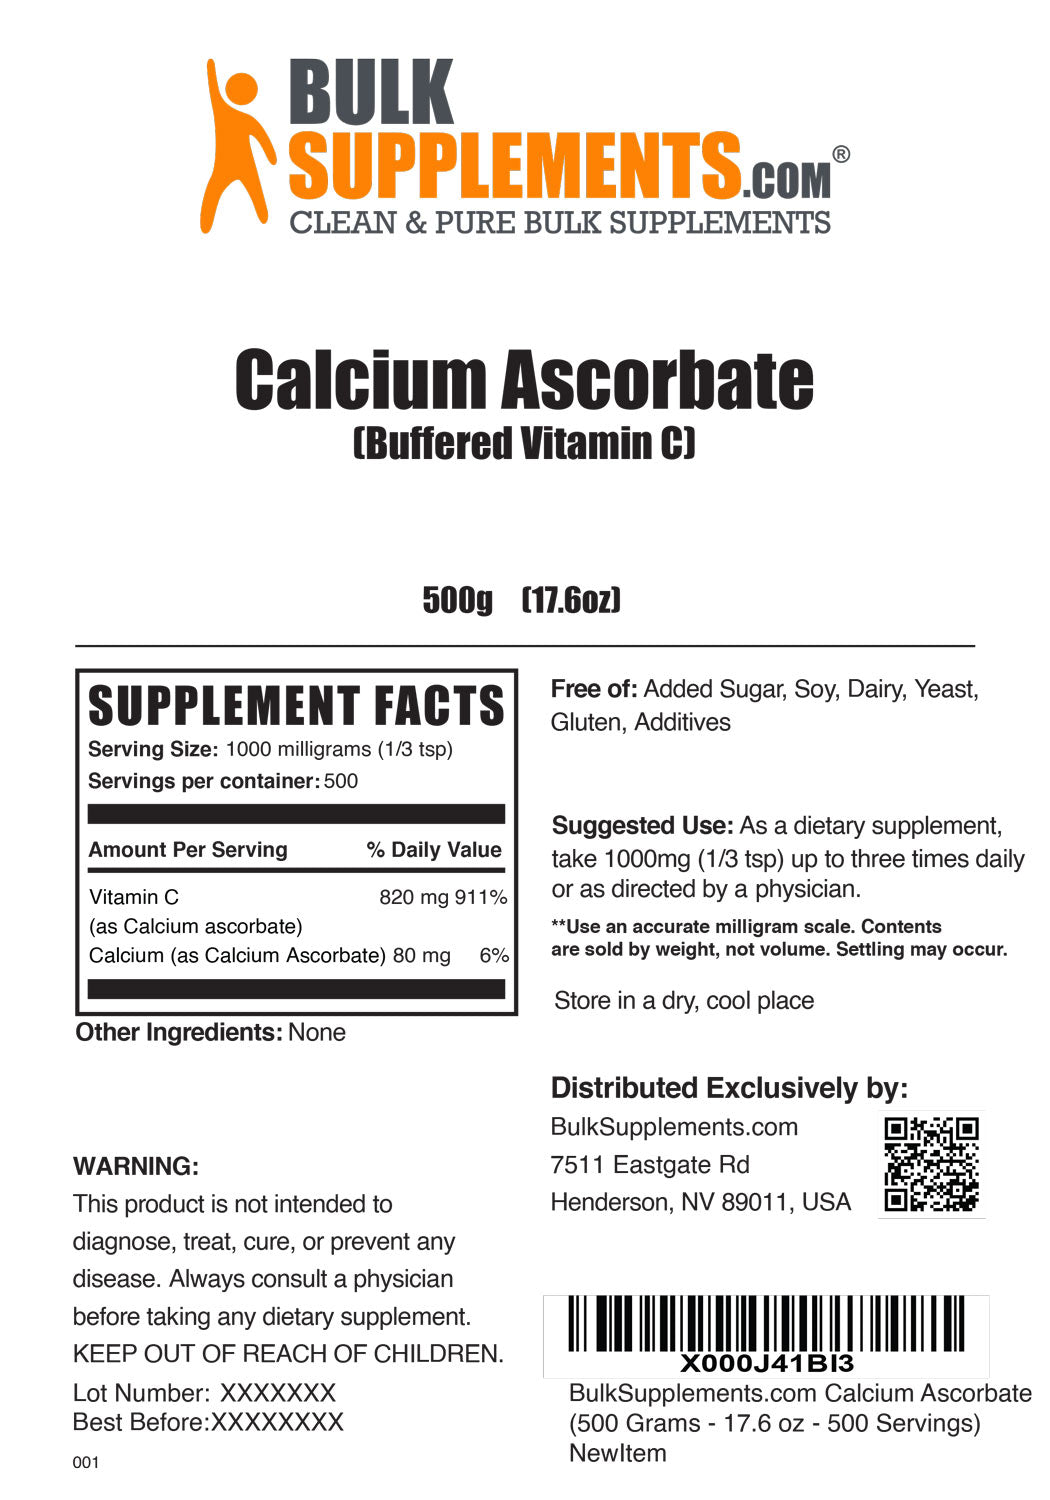 Calcium Ascorbate (Vitamin C) Powder